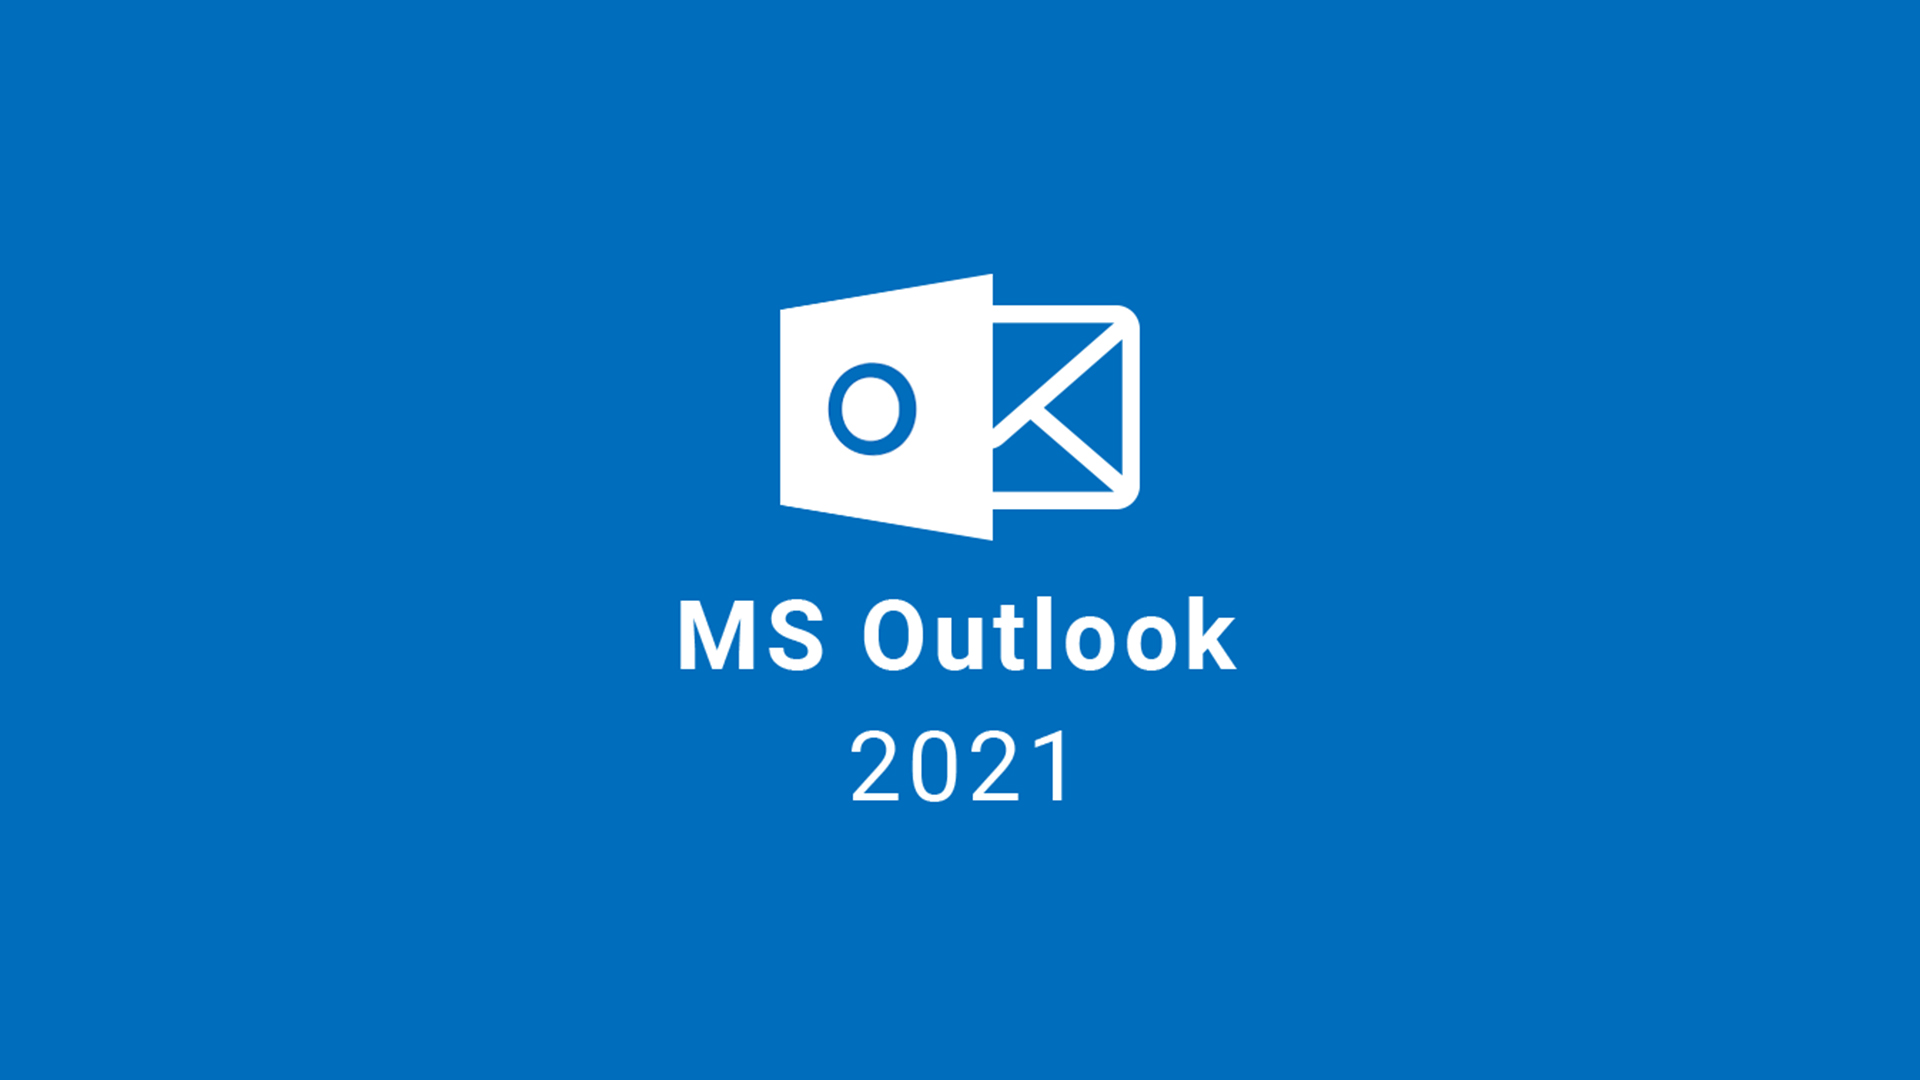 MS Outlook 2021 CD Key, 26.49 usd